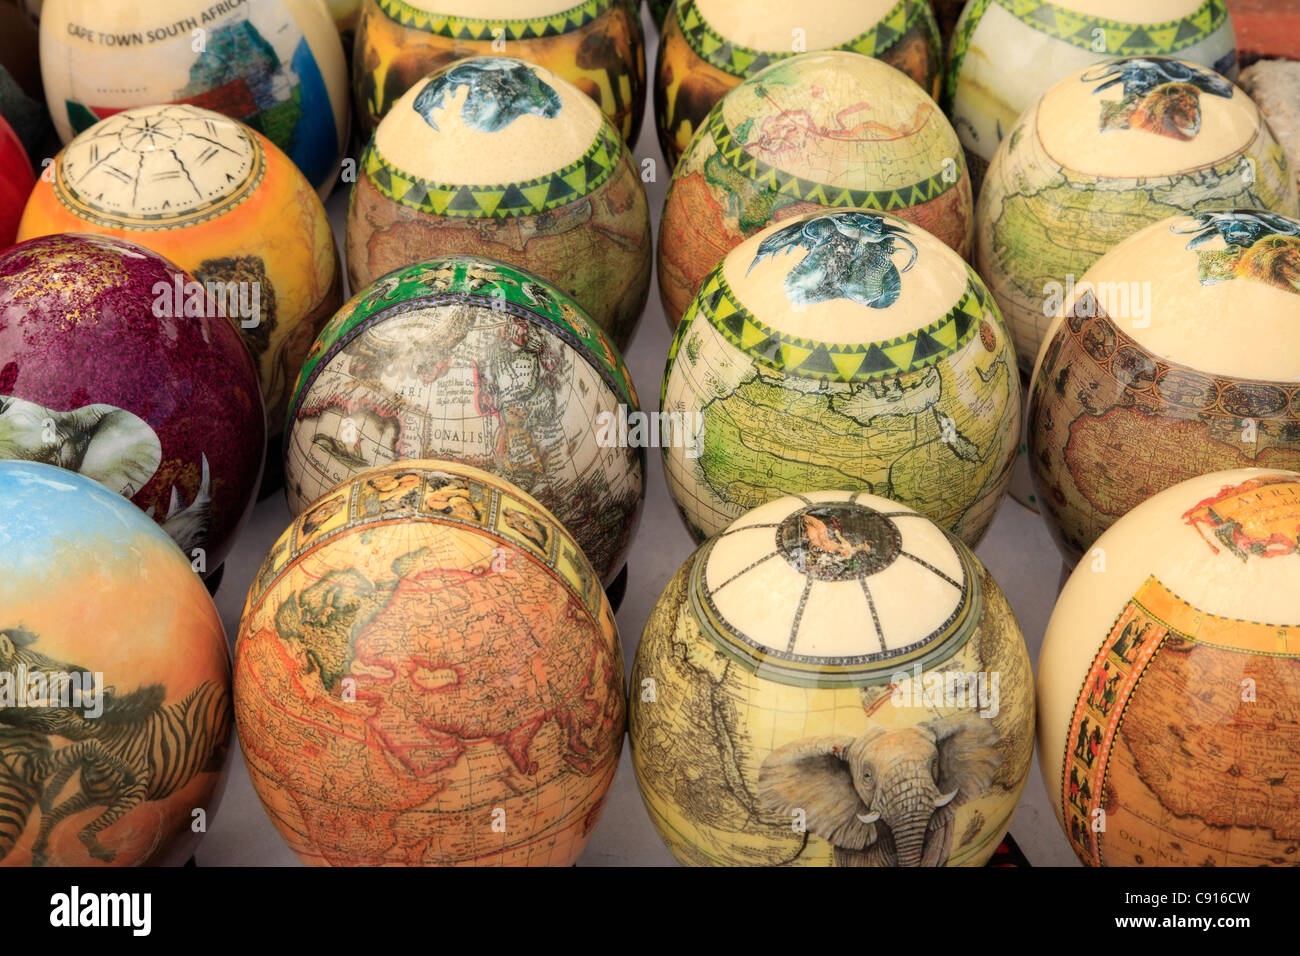 Geblasen Ostrich Eiern sind bemalt und attraktive Souvenirs von einem Besuch in Südafrika zu machen. Stockfoto